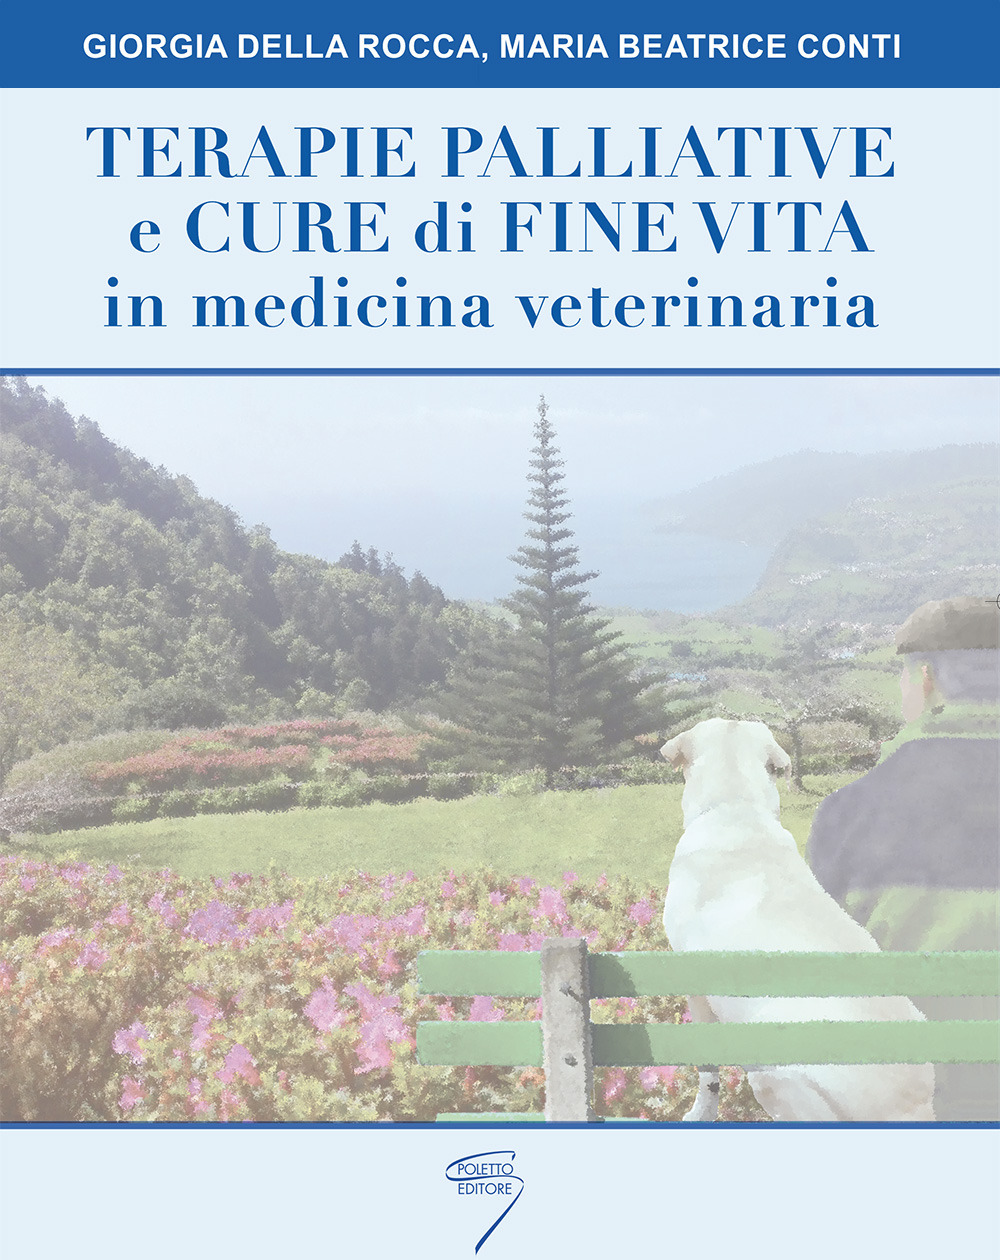 Image of Terapie palliative e cure di fine vita in medicina veterinaria